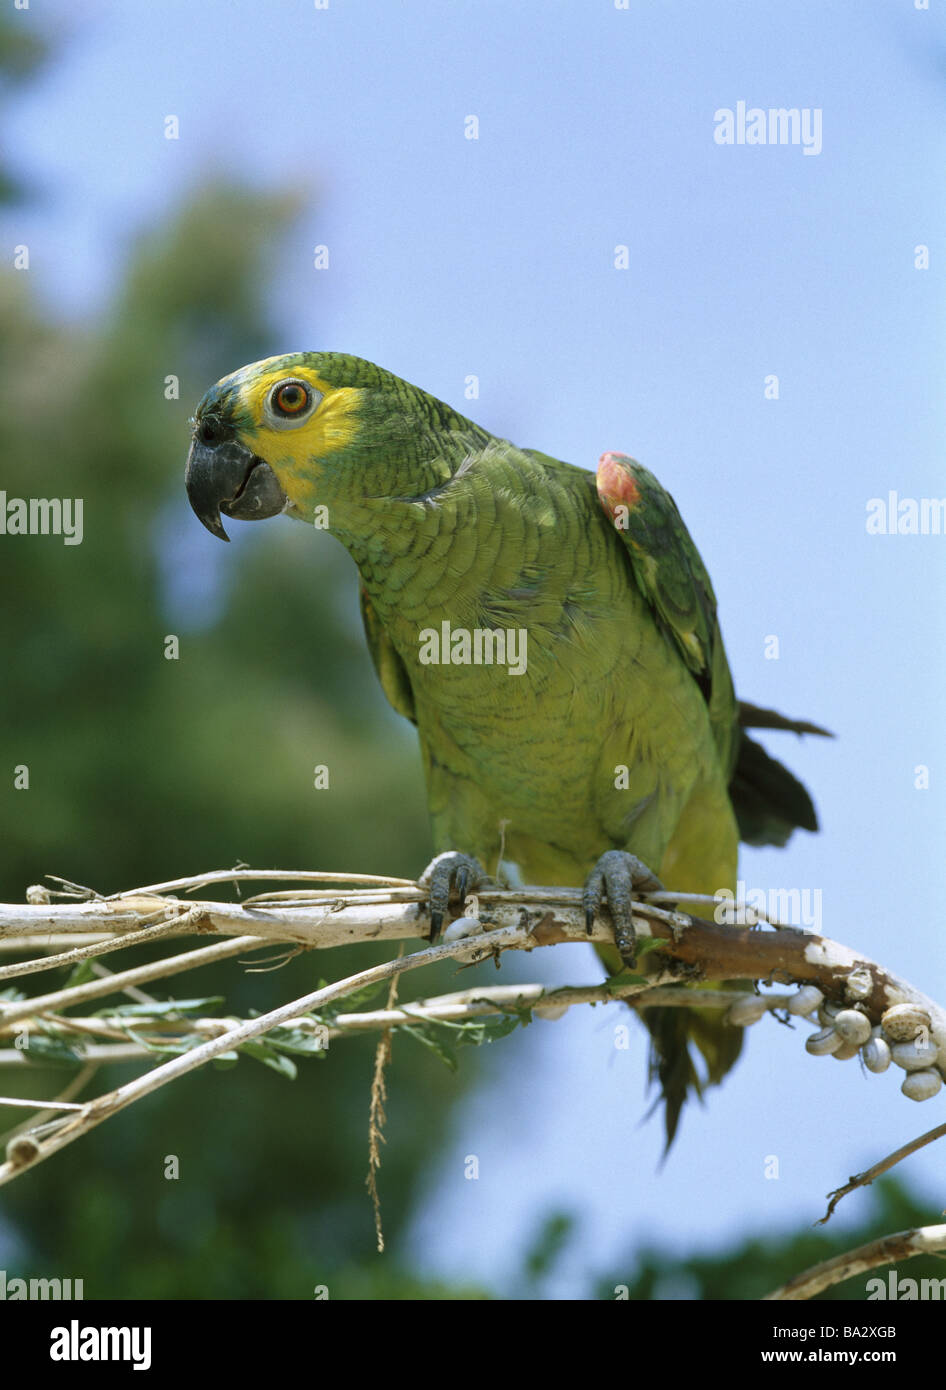 Blau-Stirn-Amazon Amazona Aestiva Aufmerksamkeit Wildlife Tiere Vogel  Papagei Rotbugaamazone Amazon Gefieder grün gelb exotische Stockfotografie  - Alamy